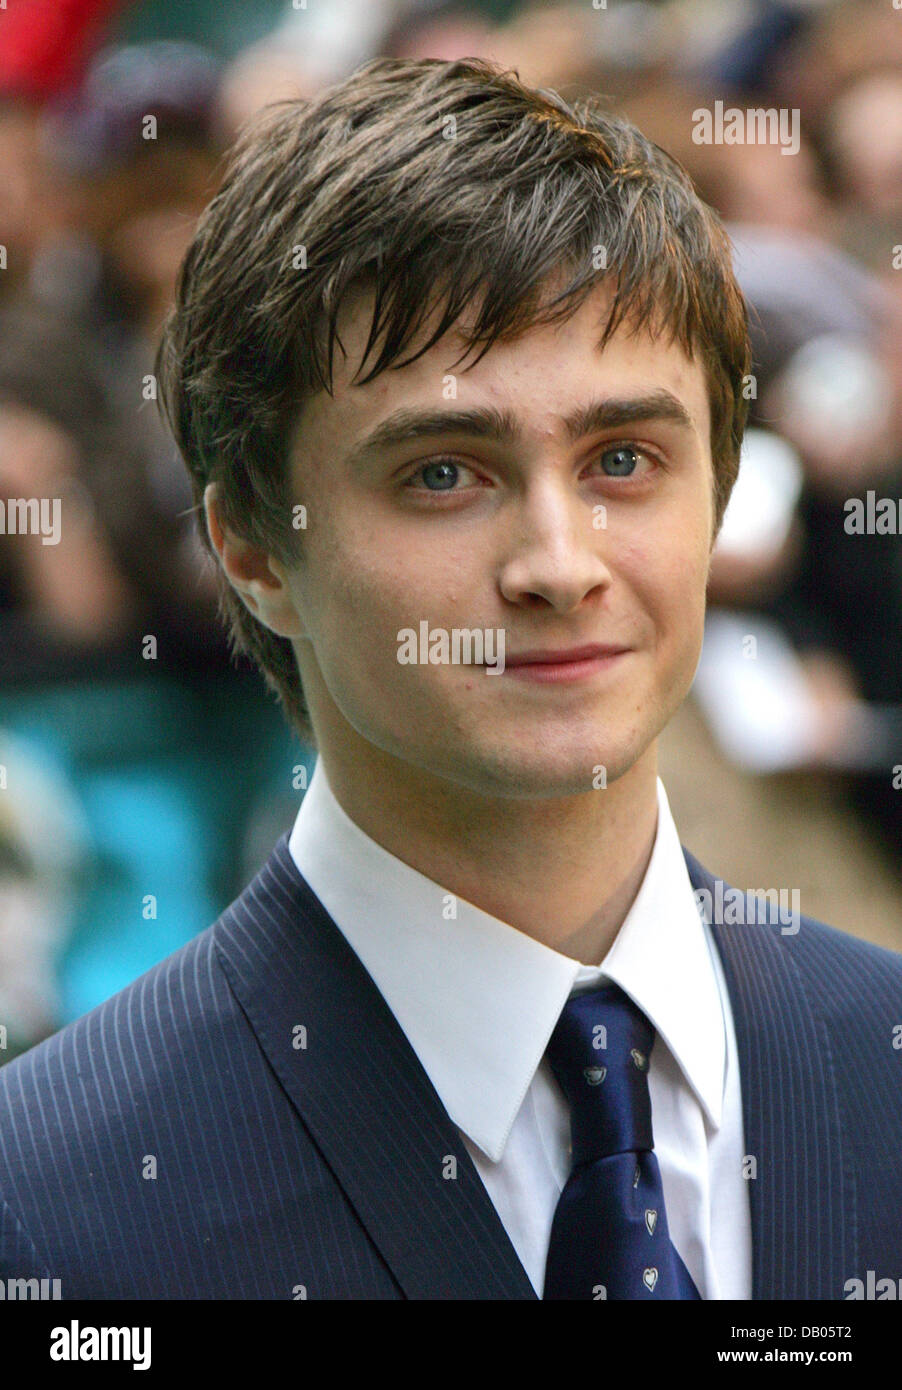 Britischer Schauspieler Daniel Radcliffe kommt für die UK-Premiere seines Films "Harry Potter und der Orden des Phönix" am Leicester Square in London, Vereinigtes Königreich, 3. Juli 2007. Der Film basiert auf britische Schriftstellerin Joanne populärwissenschaftliches Buch Fortsetzung werden am 12. Juli in den Kinos. Foto: Hubert Boesl Stockfoto